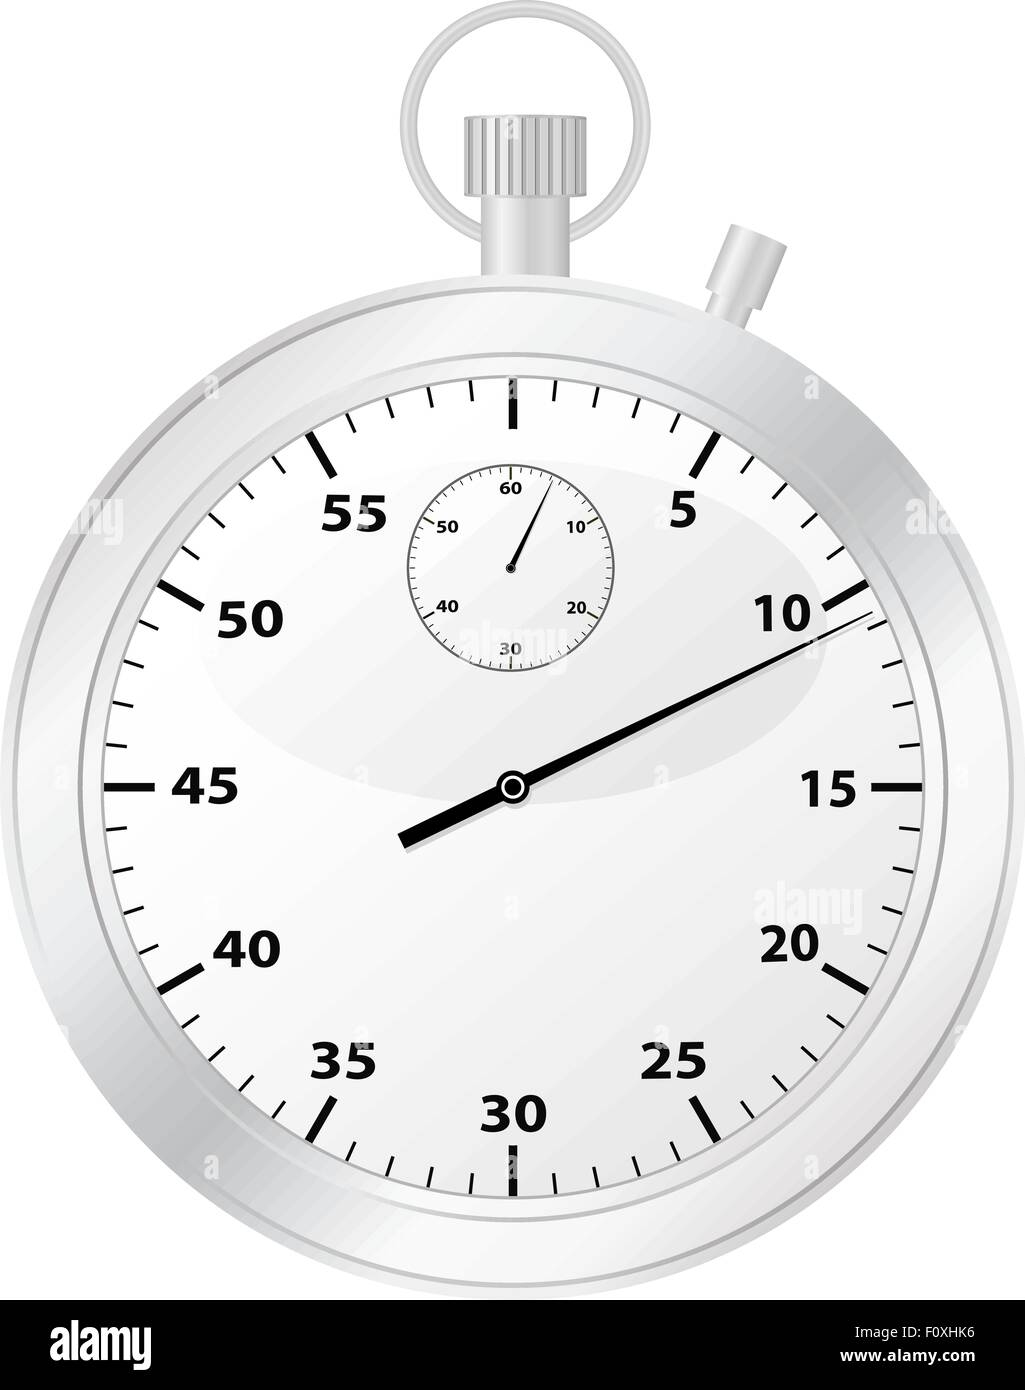 Chronometer isoliert auf einem weißen Hintergrund. Vektor-Illustration. Stock Vektor